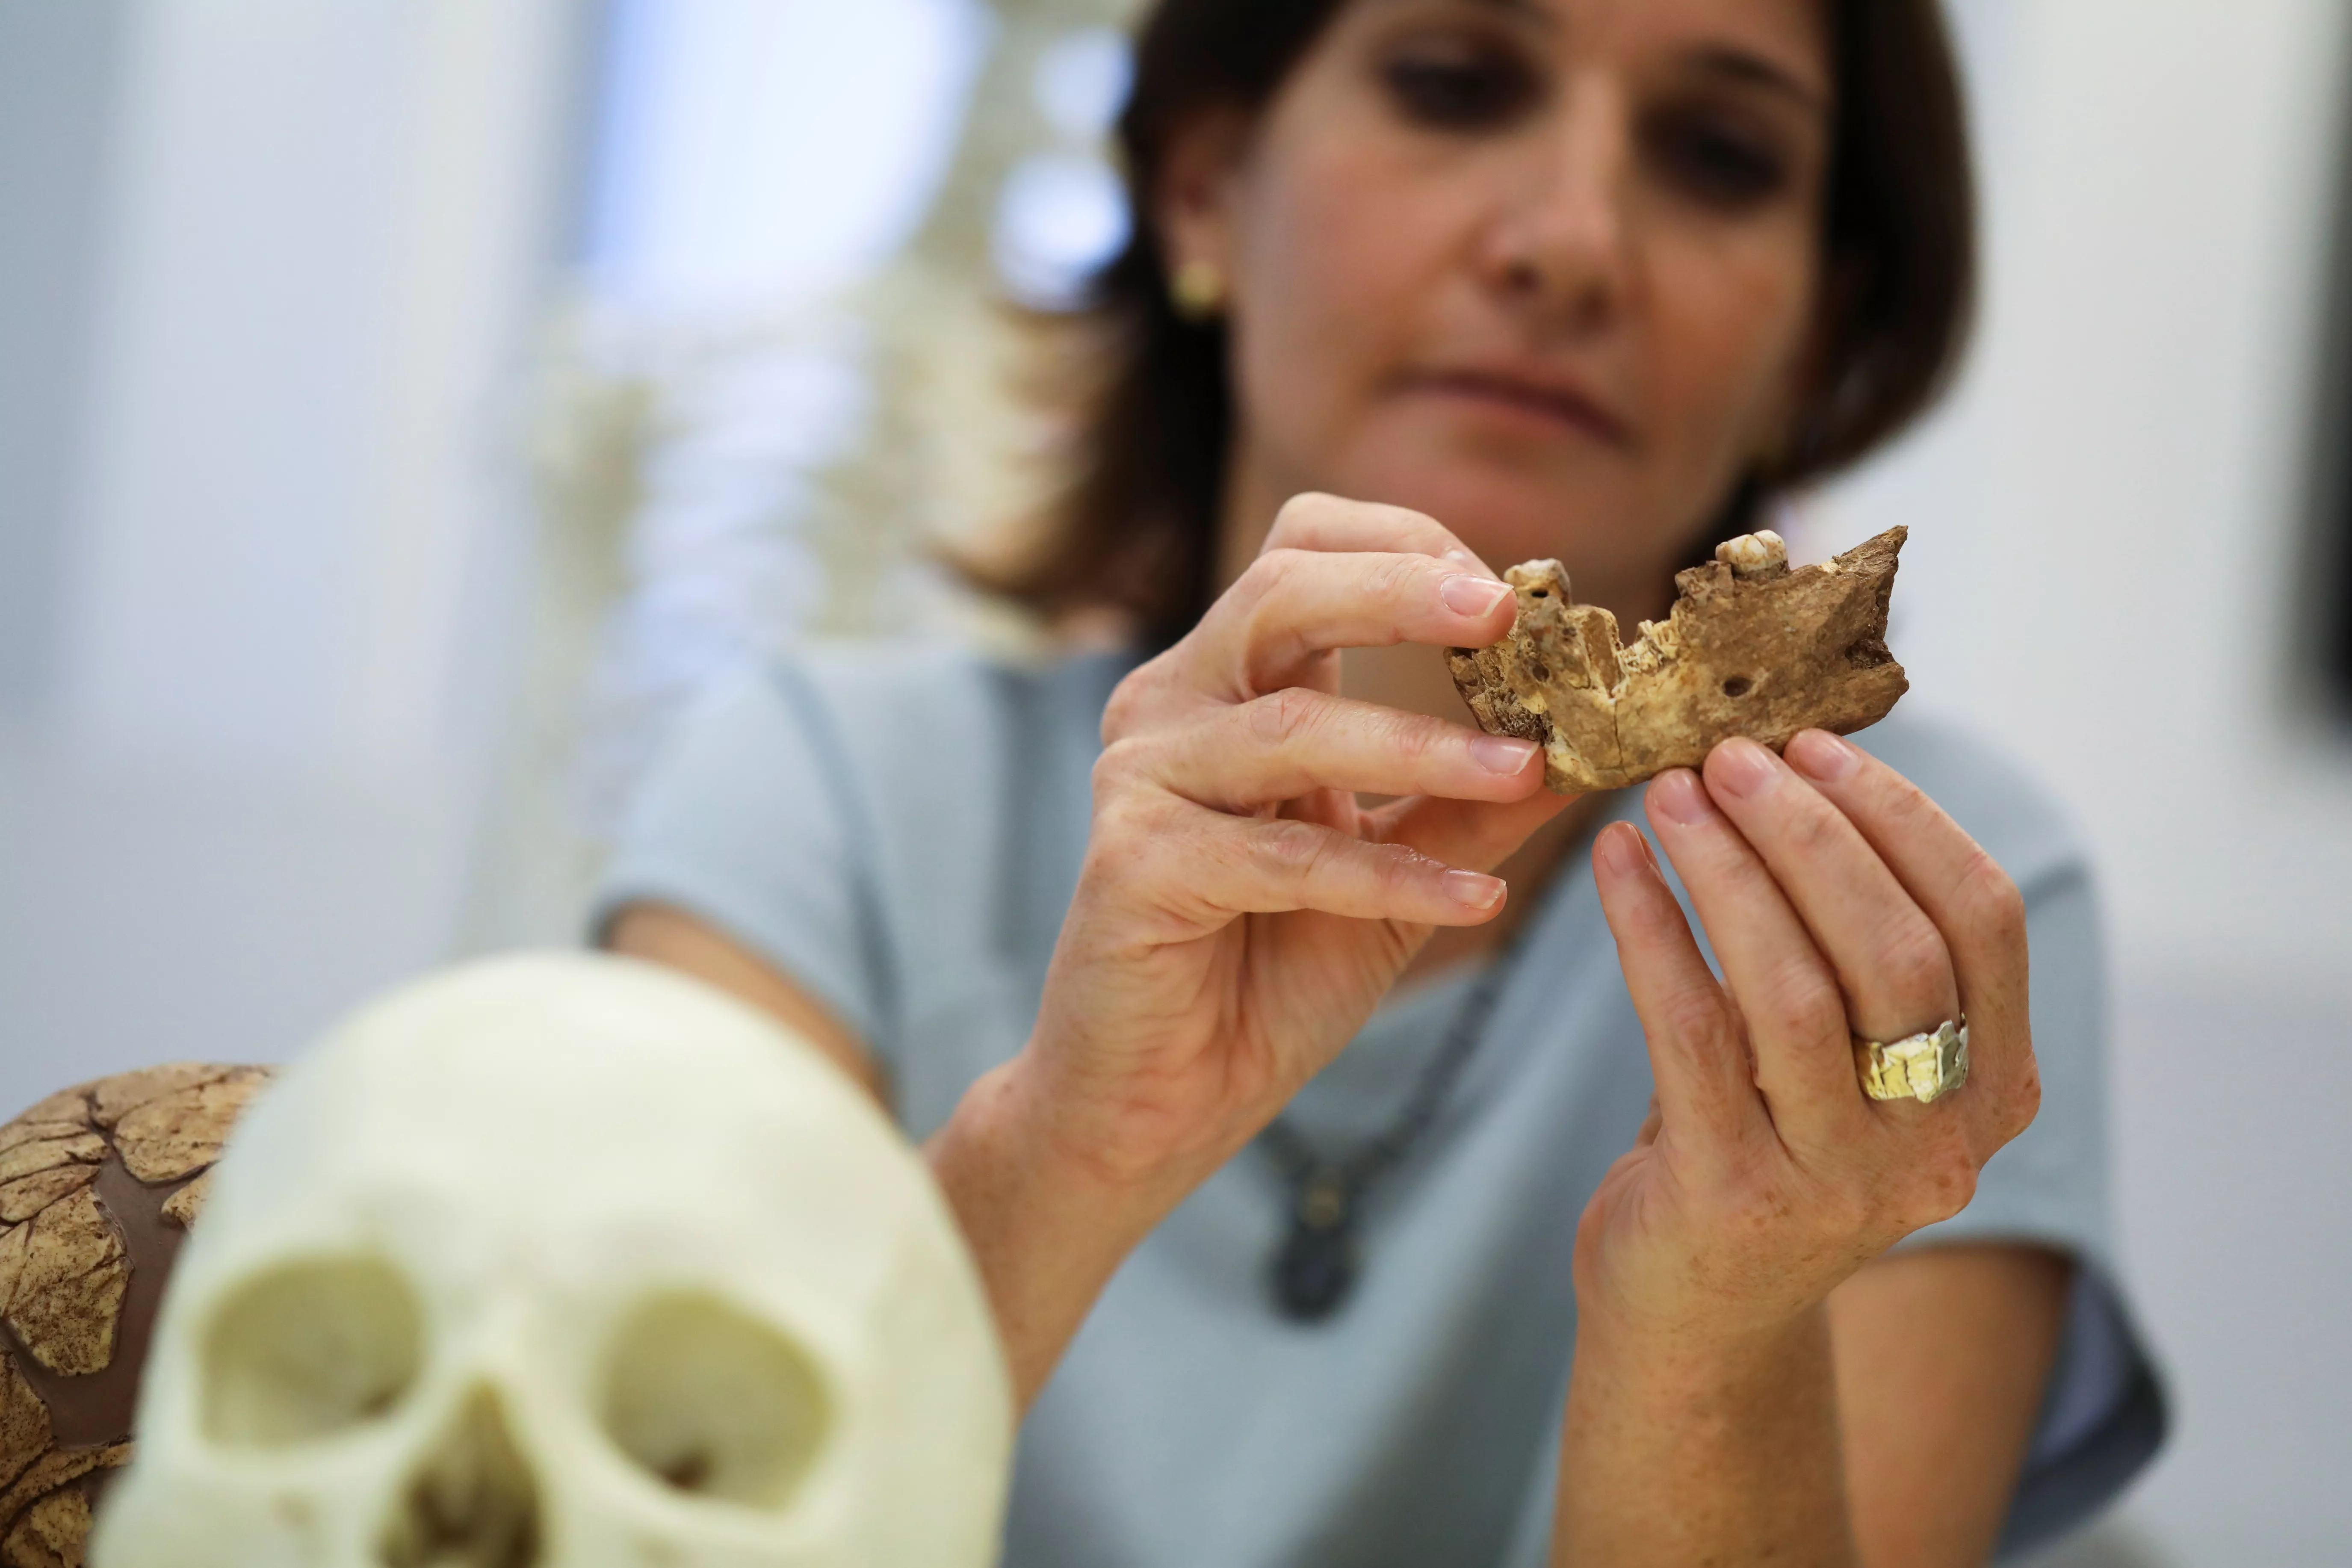 Прежде неизвестный науке вид людей существовал 120-140 тысяч лет назад. Фото: REUTERS/Ammar Awad